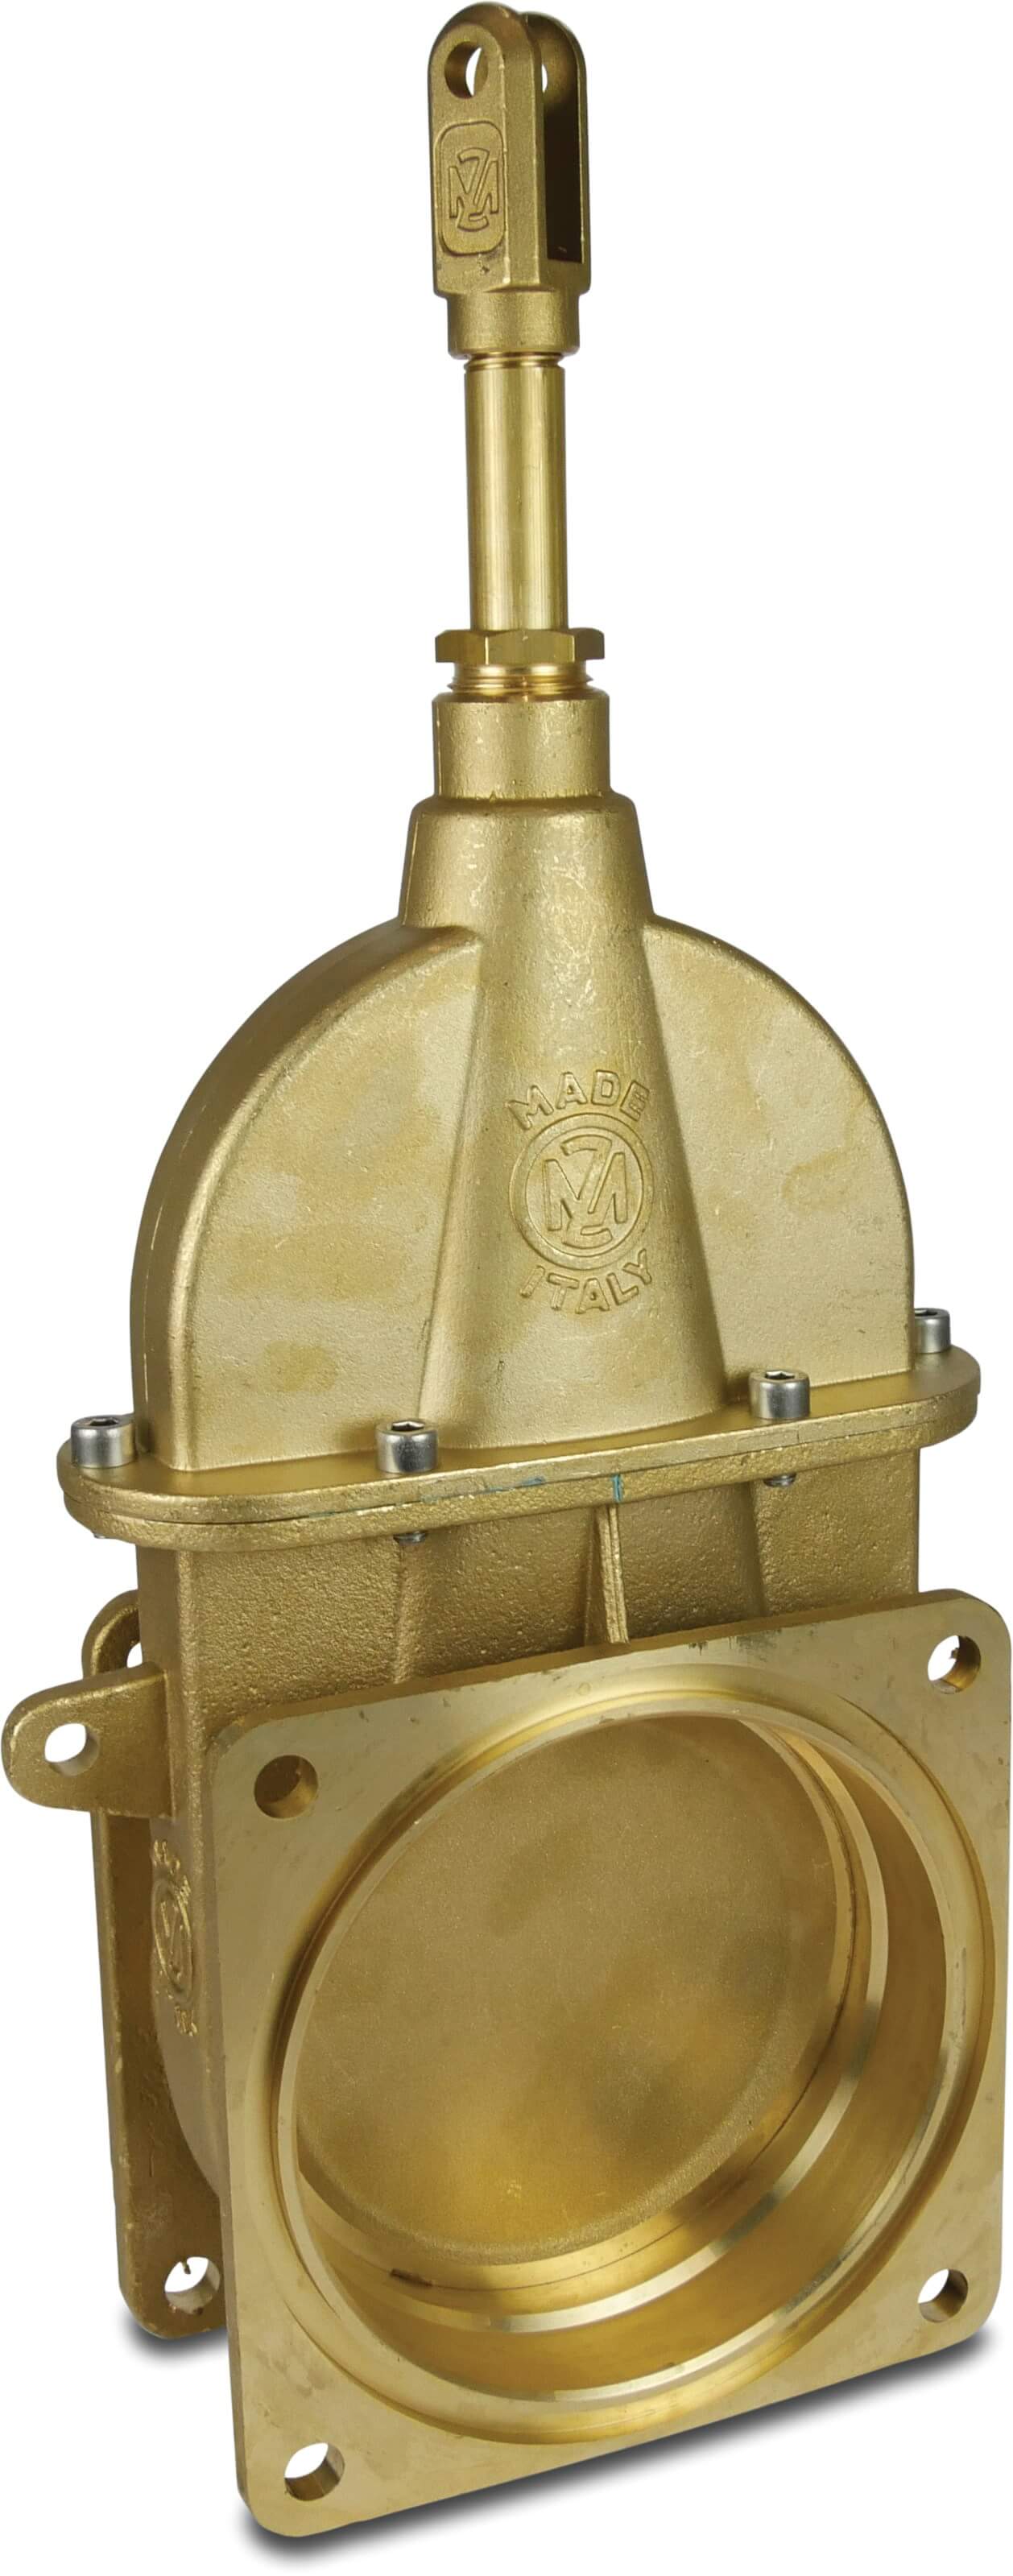 MZ Sluice valve 6" flange type 0074